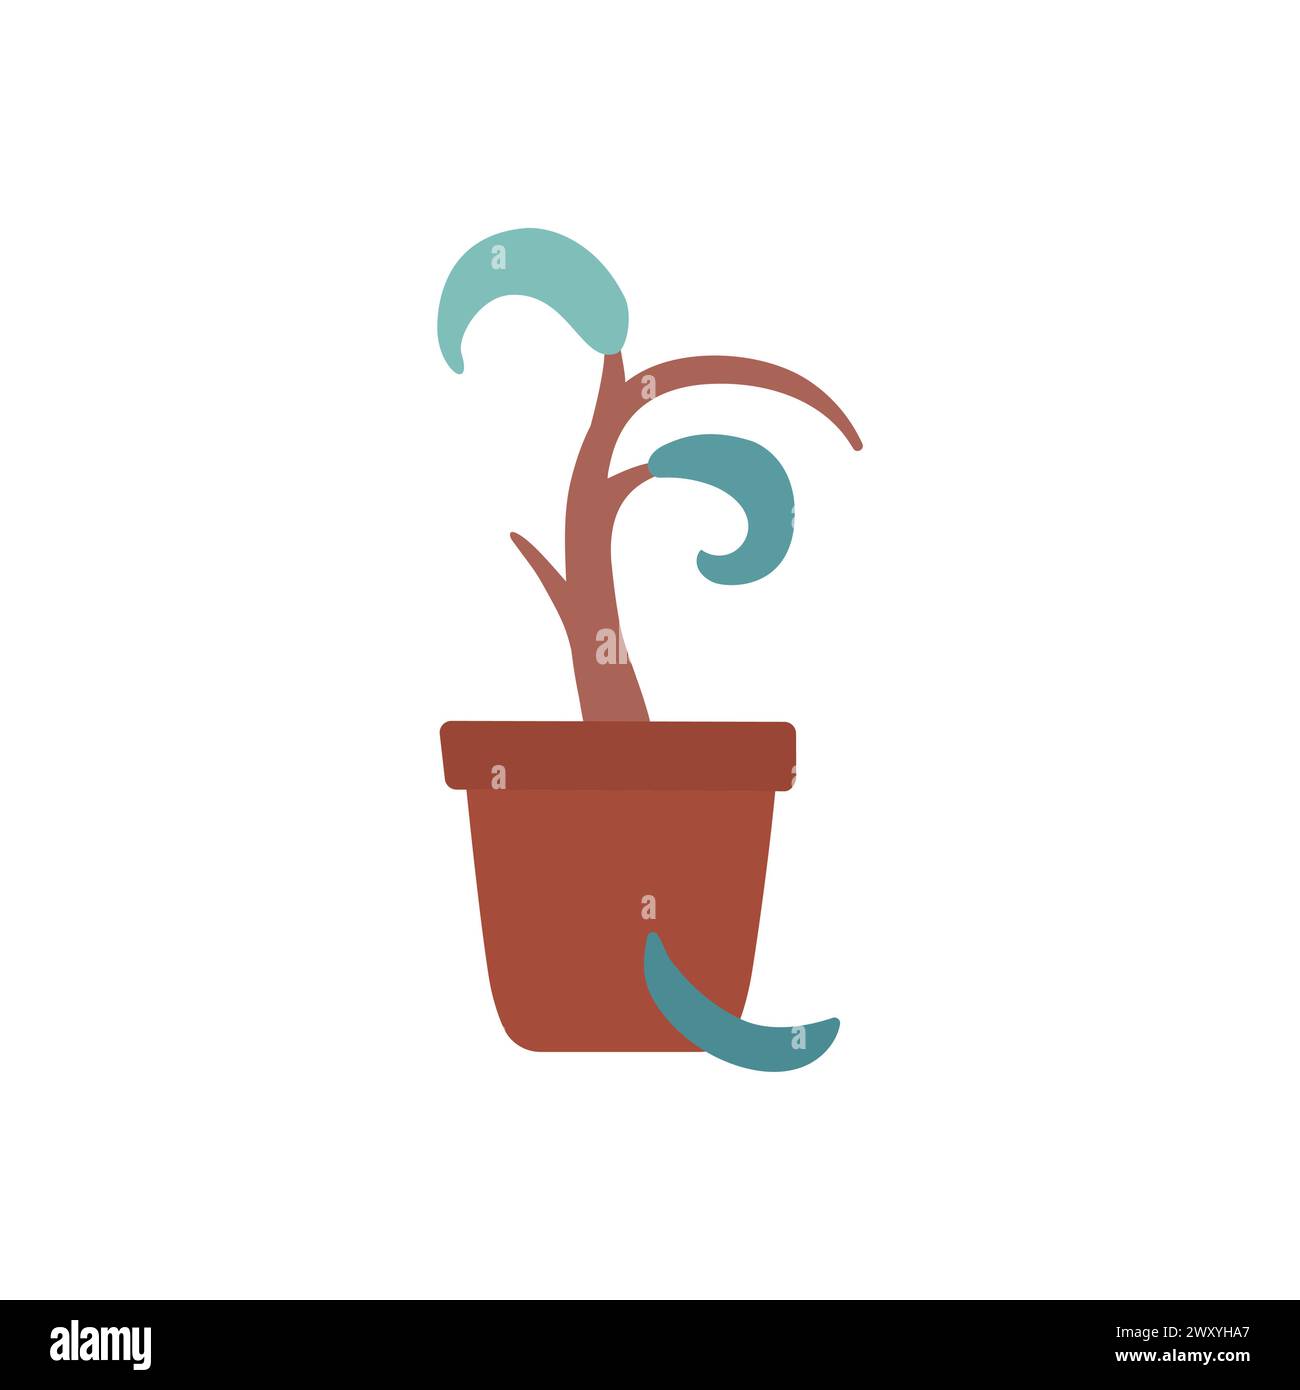 Illustrazione isolata vettoriale con pianta domestica piatta e bruciata in vaso di ceramica. I fiori malati perdono le foglie dallo stress perché secchi. Il ficus gerut è al Illustrazione Vettoriale